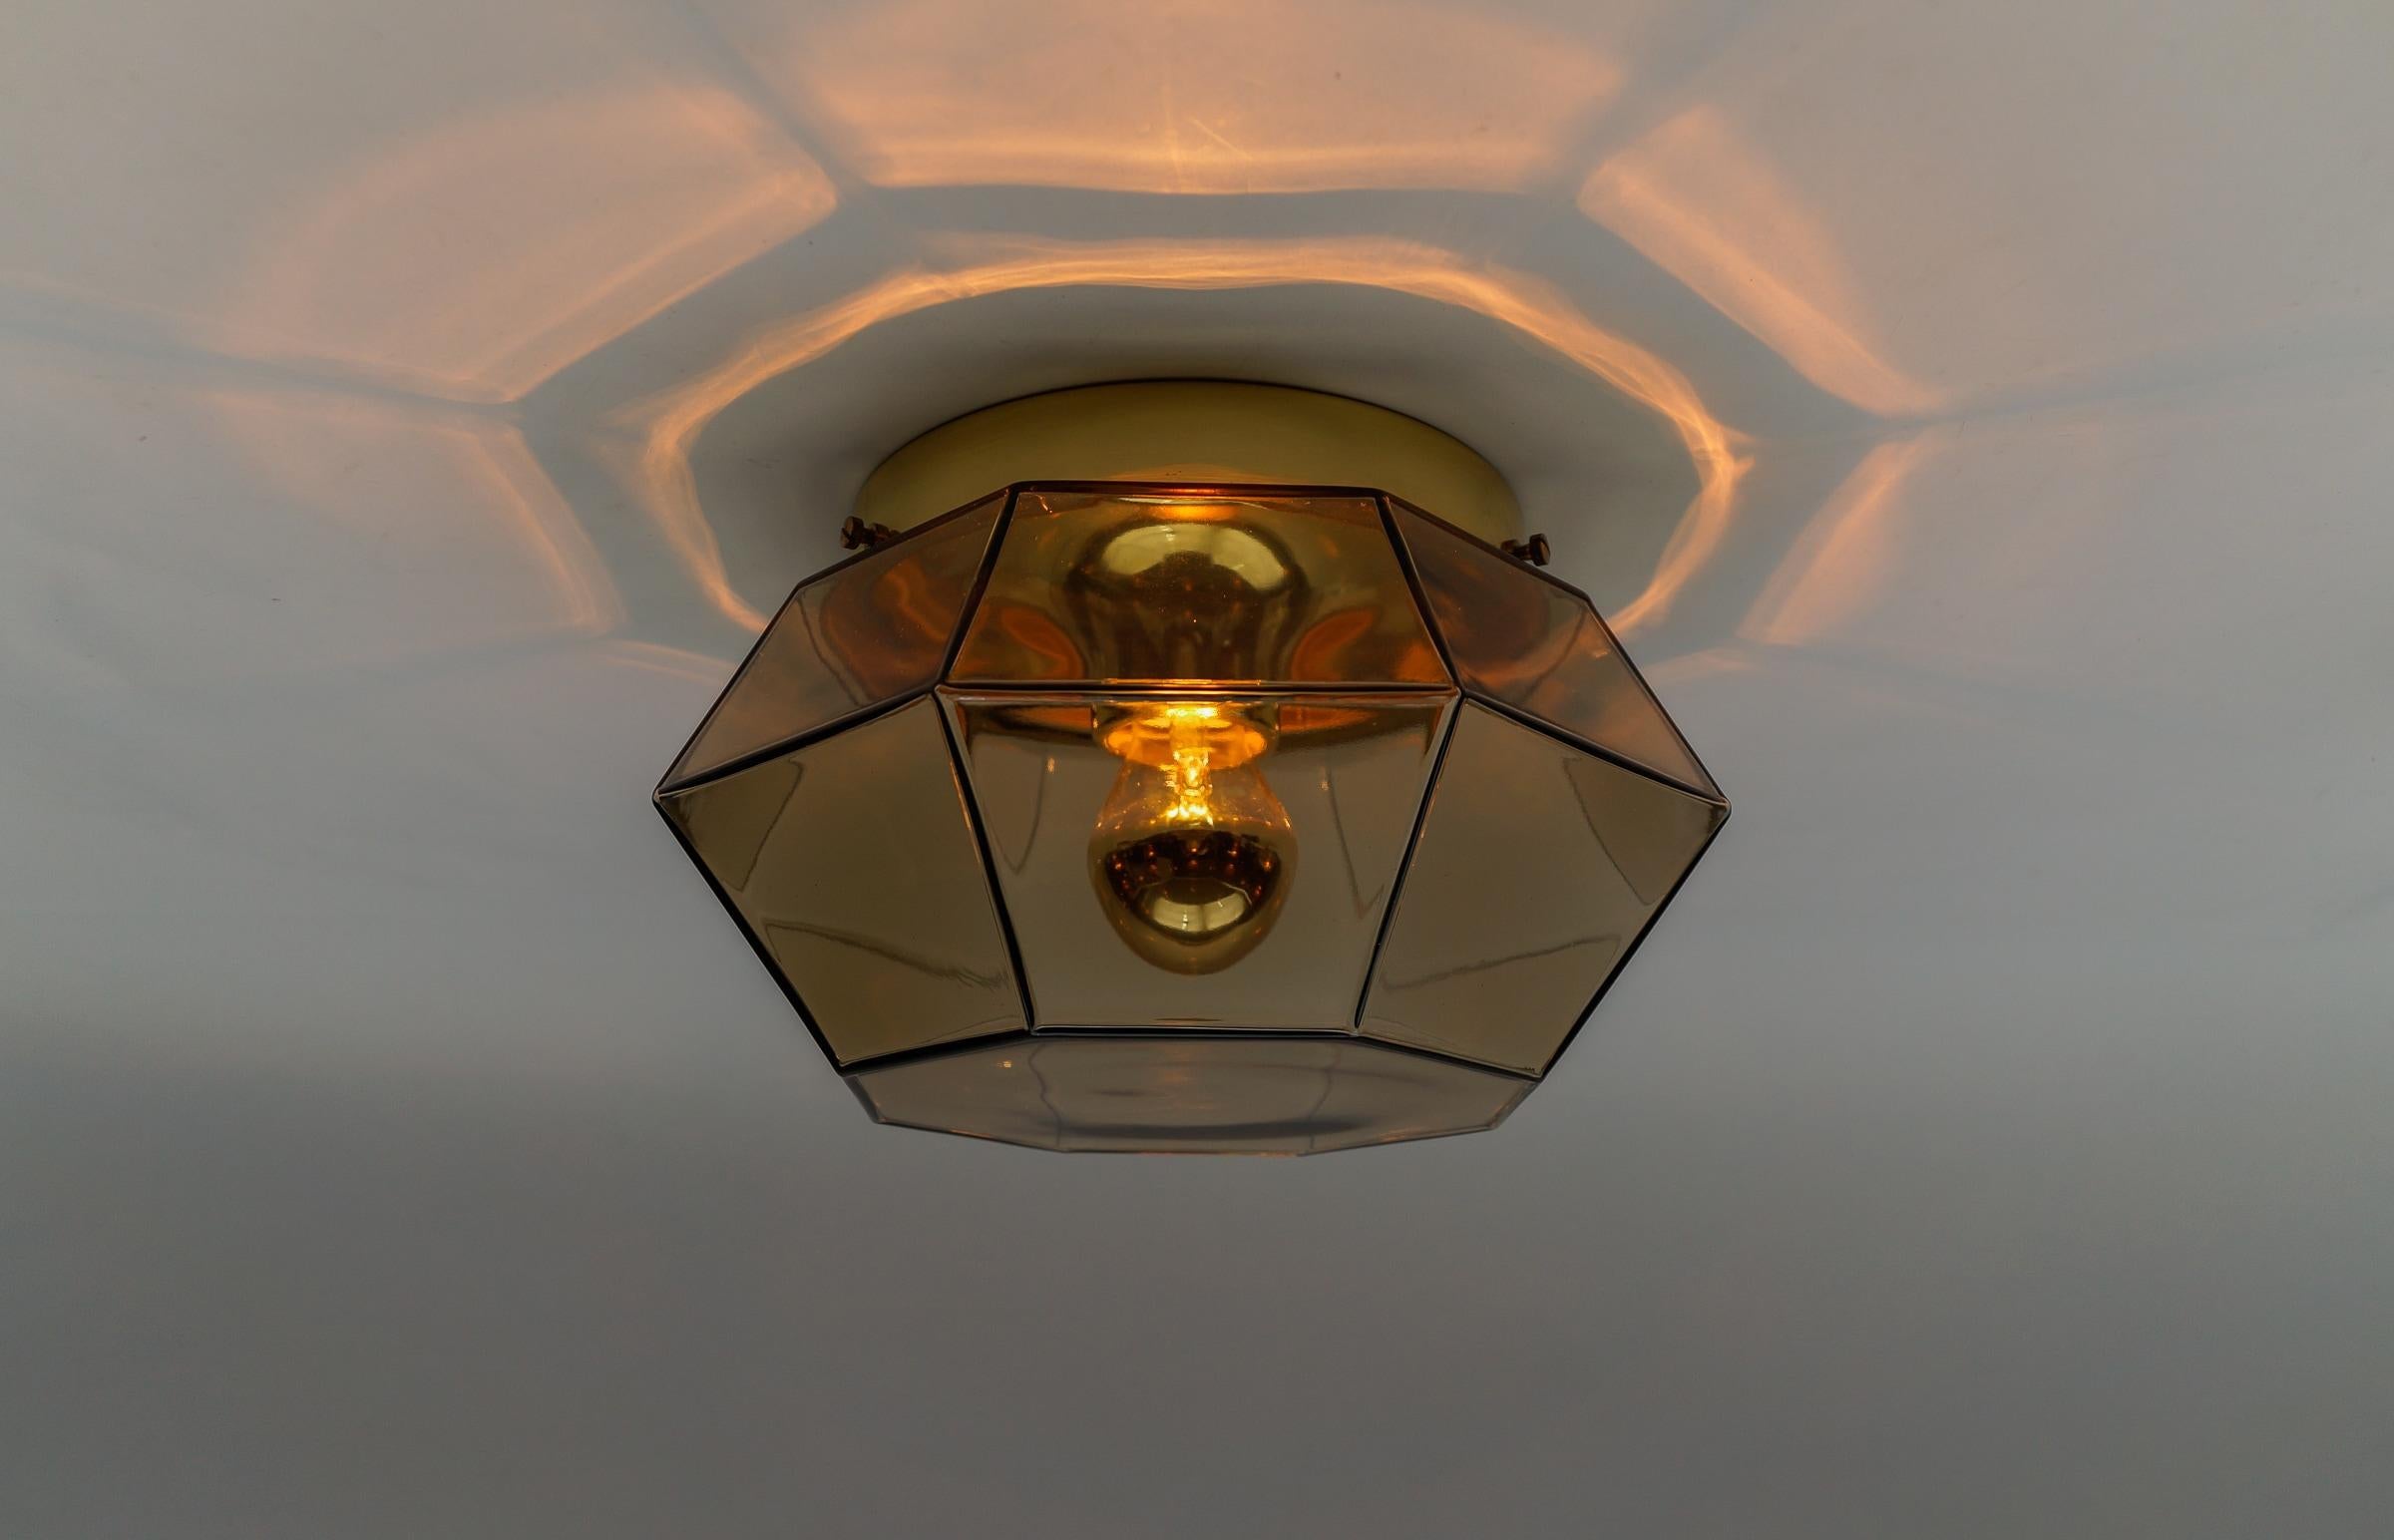 Einbaubeleuchtung aus Gold und Rauchglas von Limburg, Deutschland 1960er Jahre

Achteckige Laterne mit facettenreichem Klarglas.

Abmessungen
Höhe: 18 cm (7.09 in.)
Breite: 30 cm (11.81 in.)

Die Leuchte benötigt 1 x E27 Standard Glühbirne mit max.